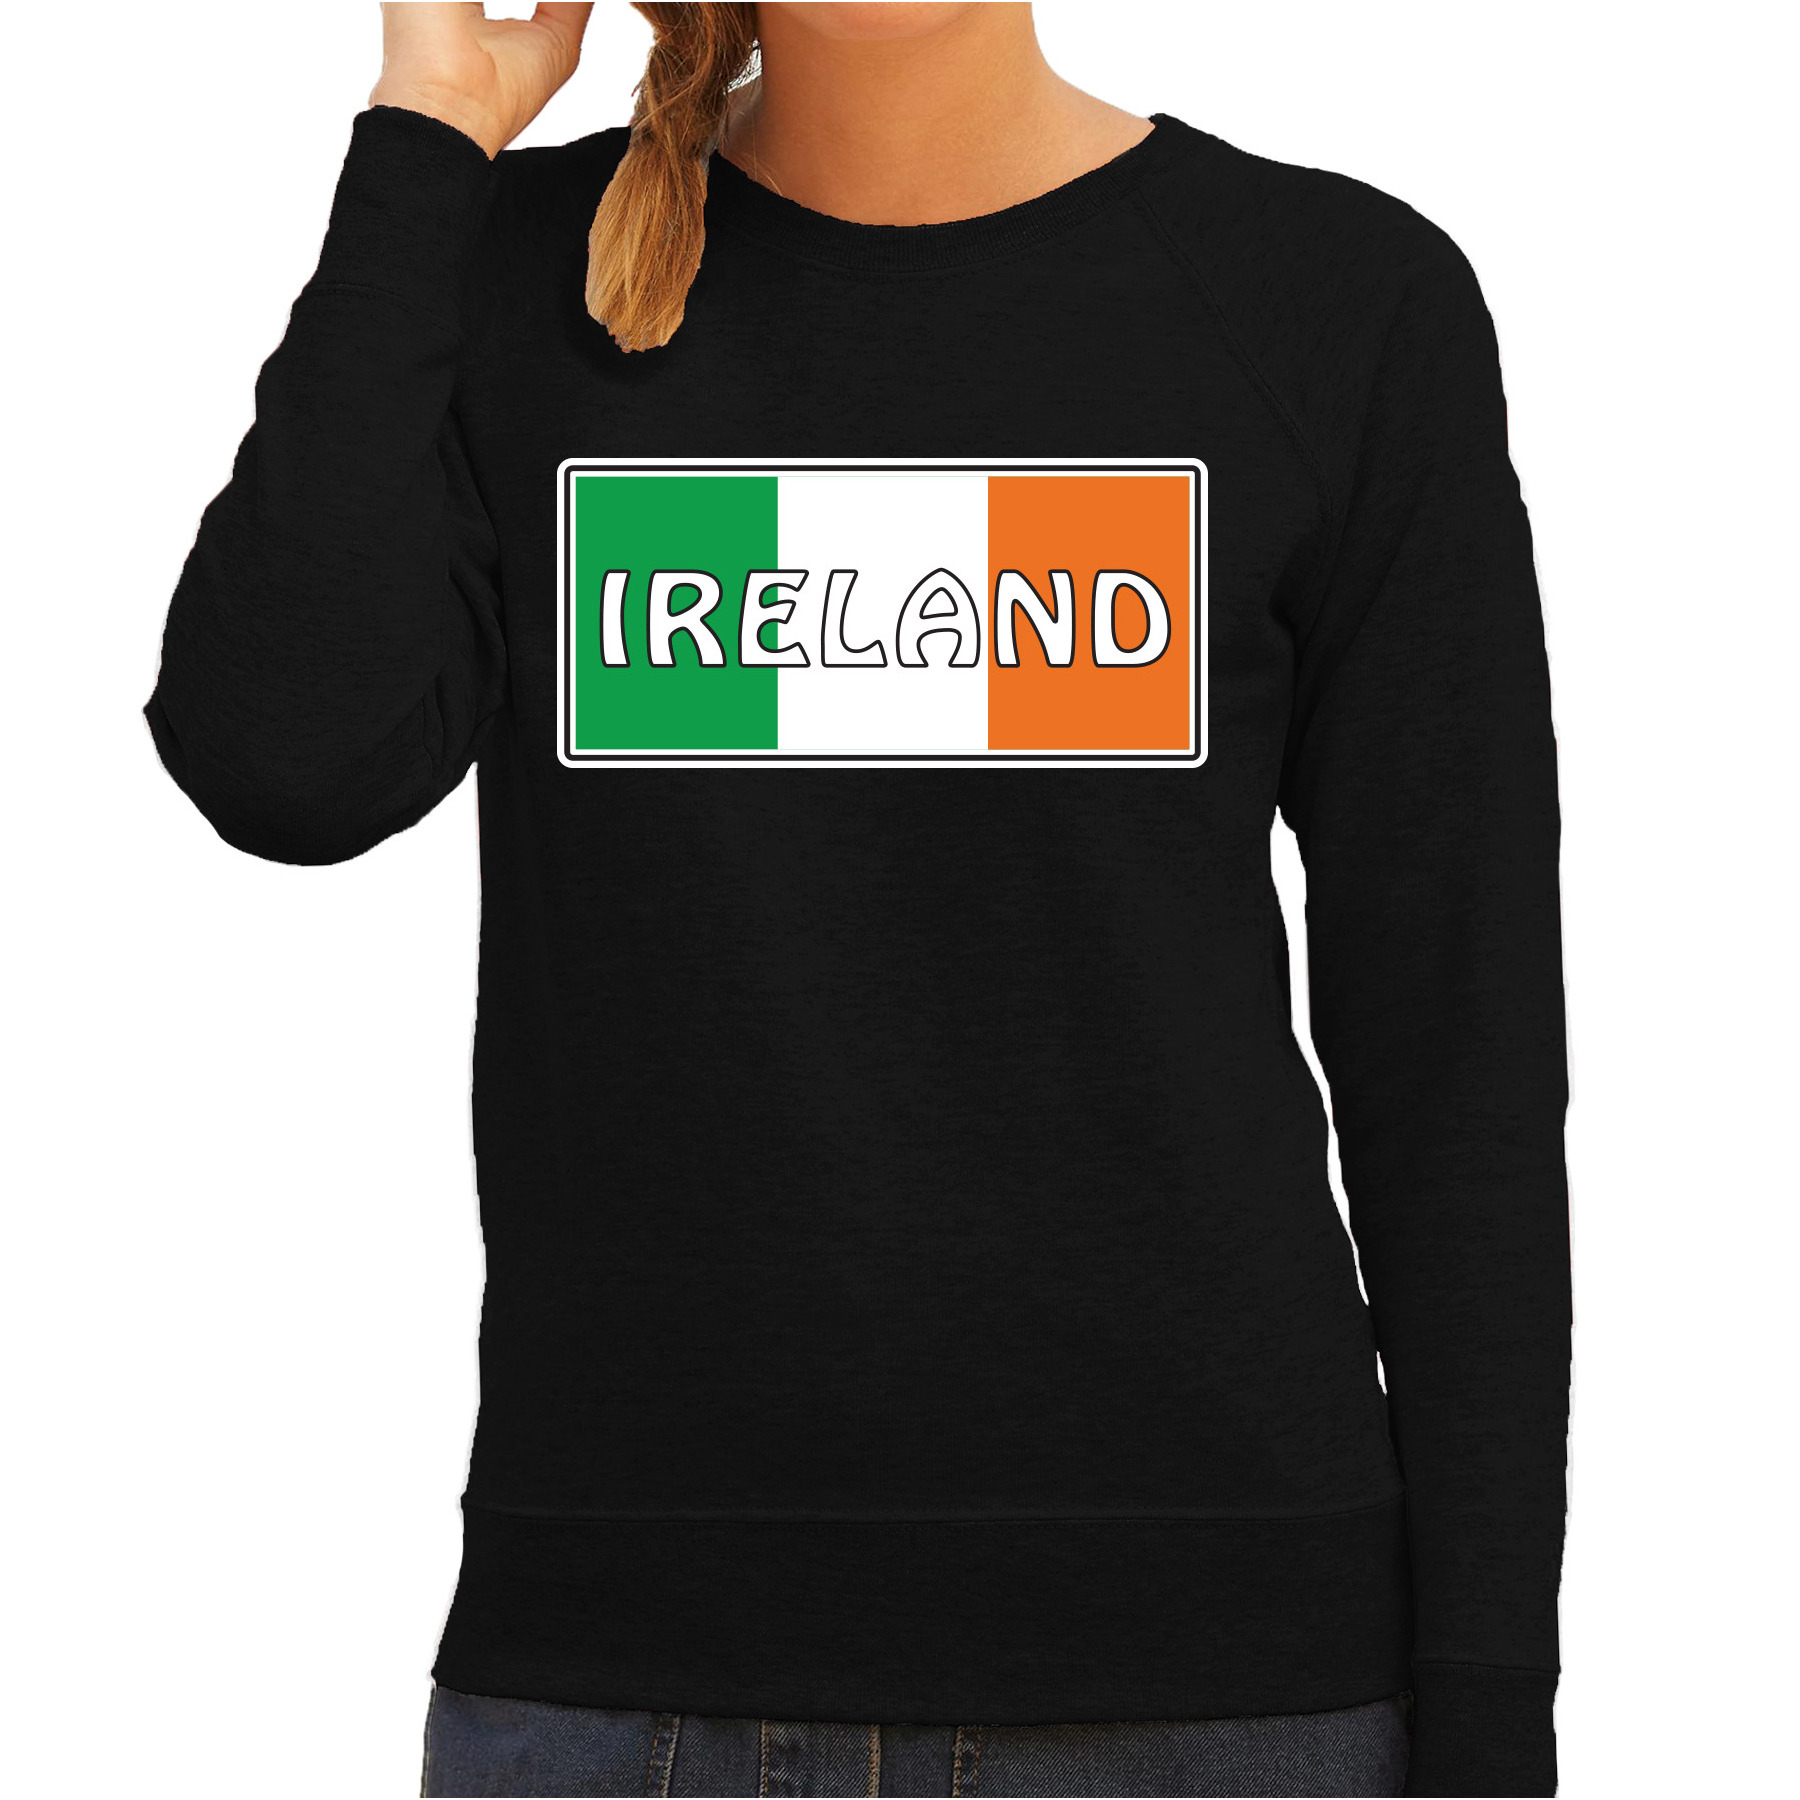 Ierland-Ireland landen sweater zwart dames